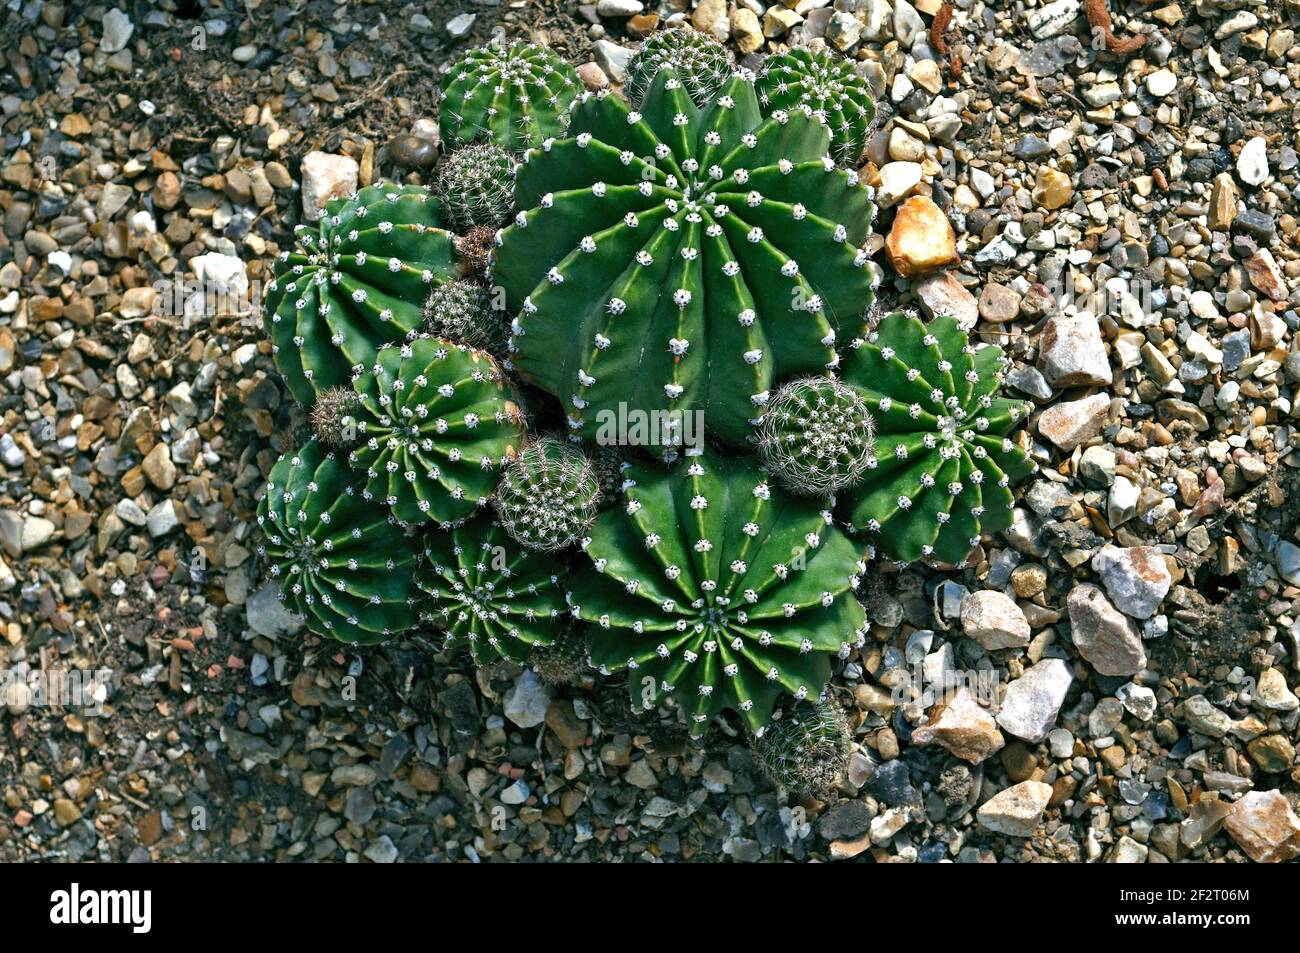 Ausstellung von Kaktus Echinopsis oxygona in einem trockenen Garten Stockfoto